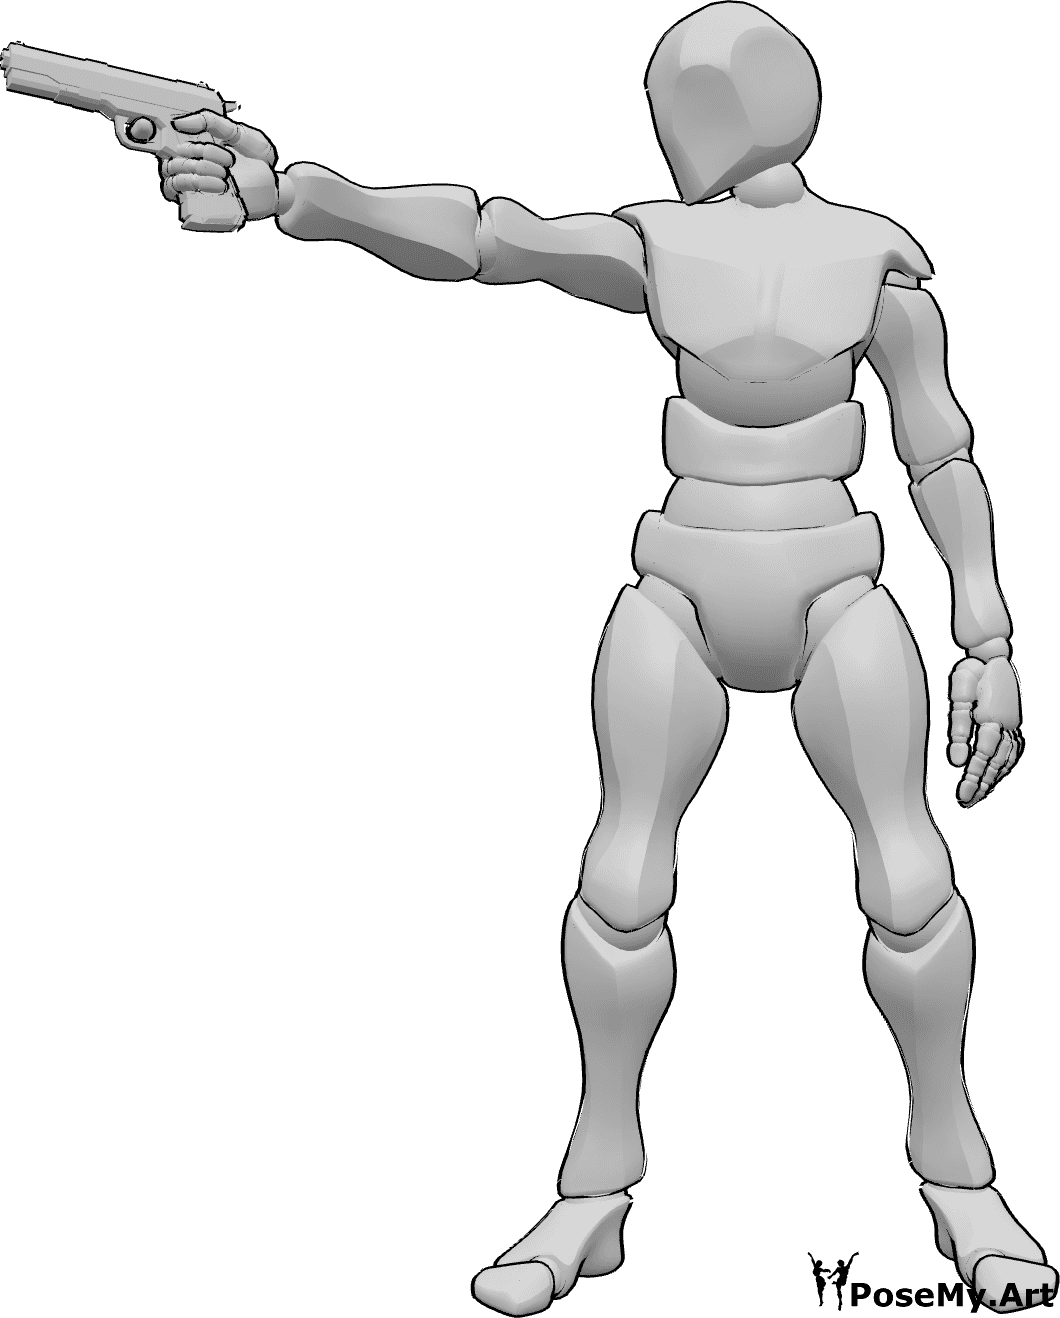 Referência de poses- Homem a apontar pose de pistola - Homem de pé, segurando uma pistola na mão direita e apontando para a direita